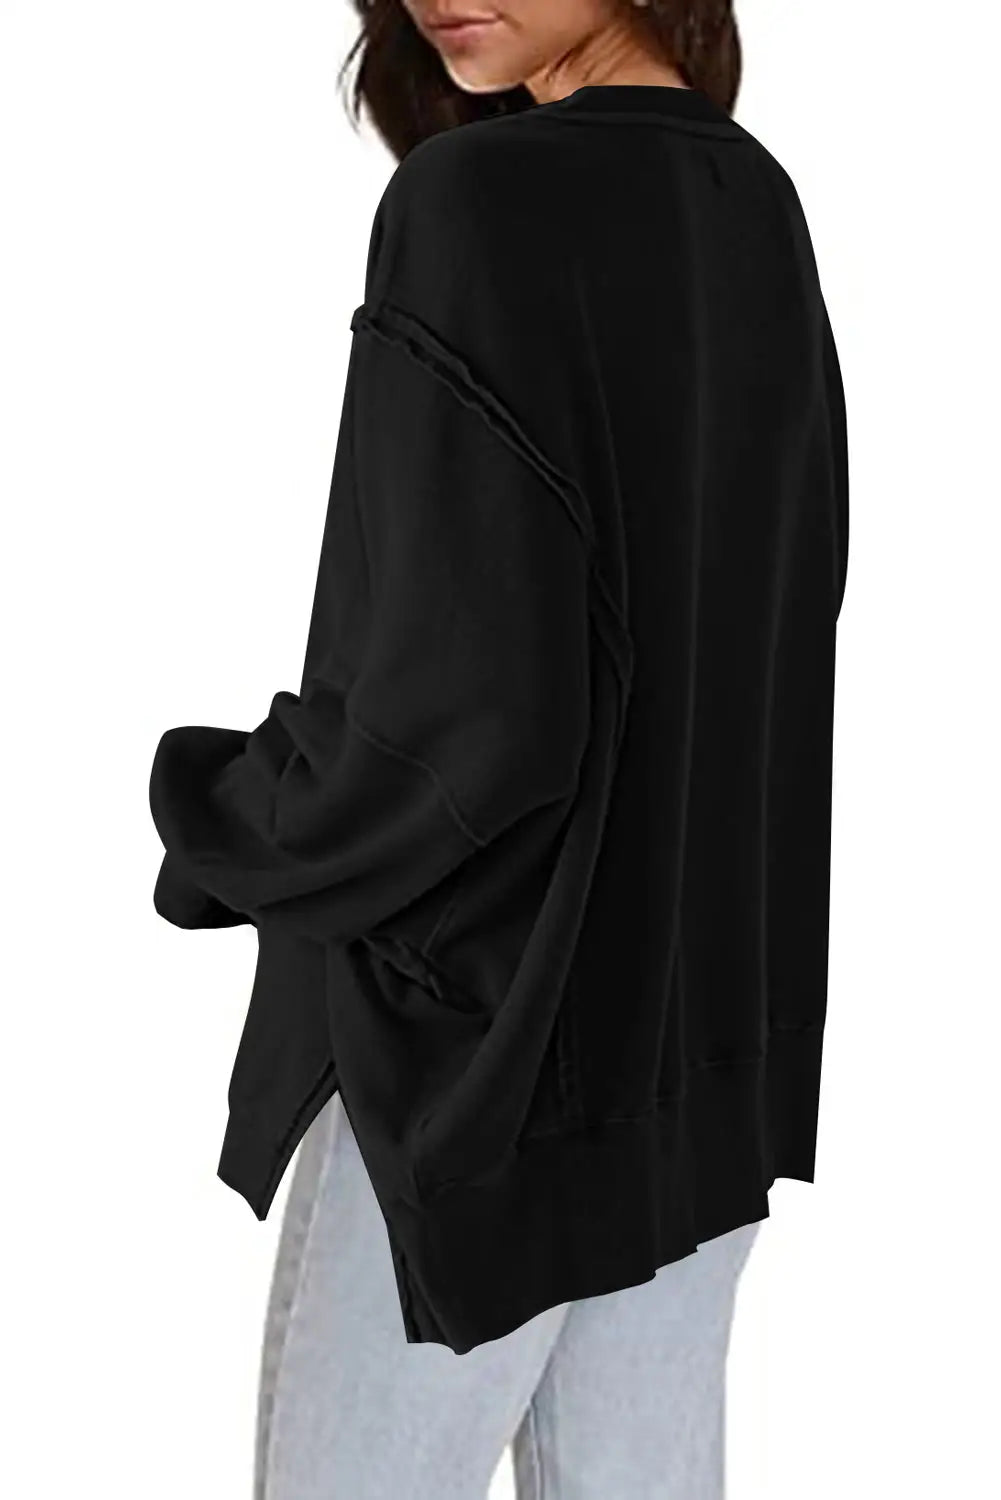 Black exposed seam drop shoulder slit high low hem sweatshirt - sweatshits & hoodies